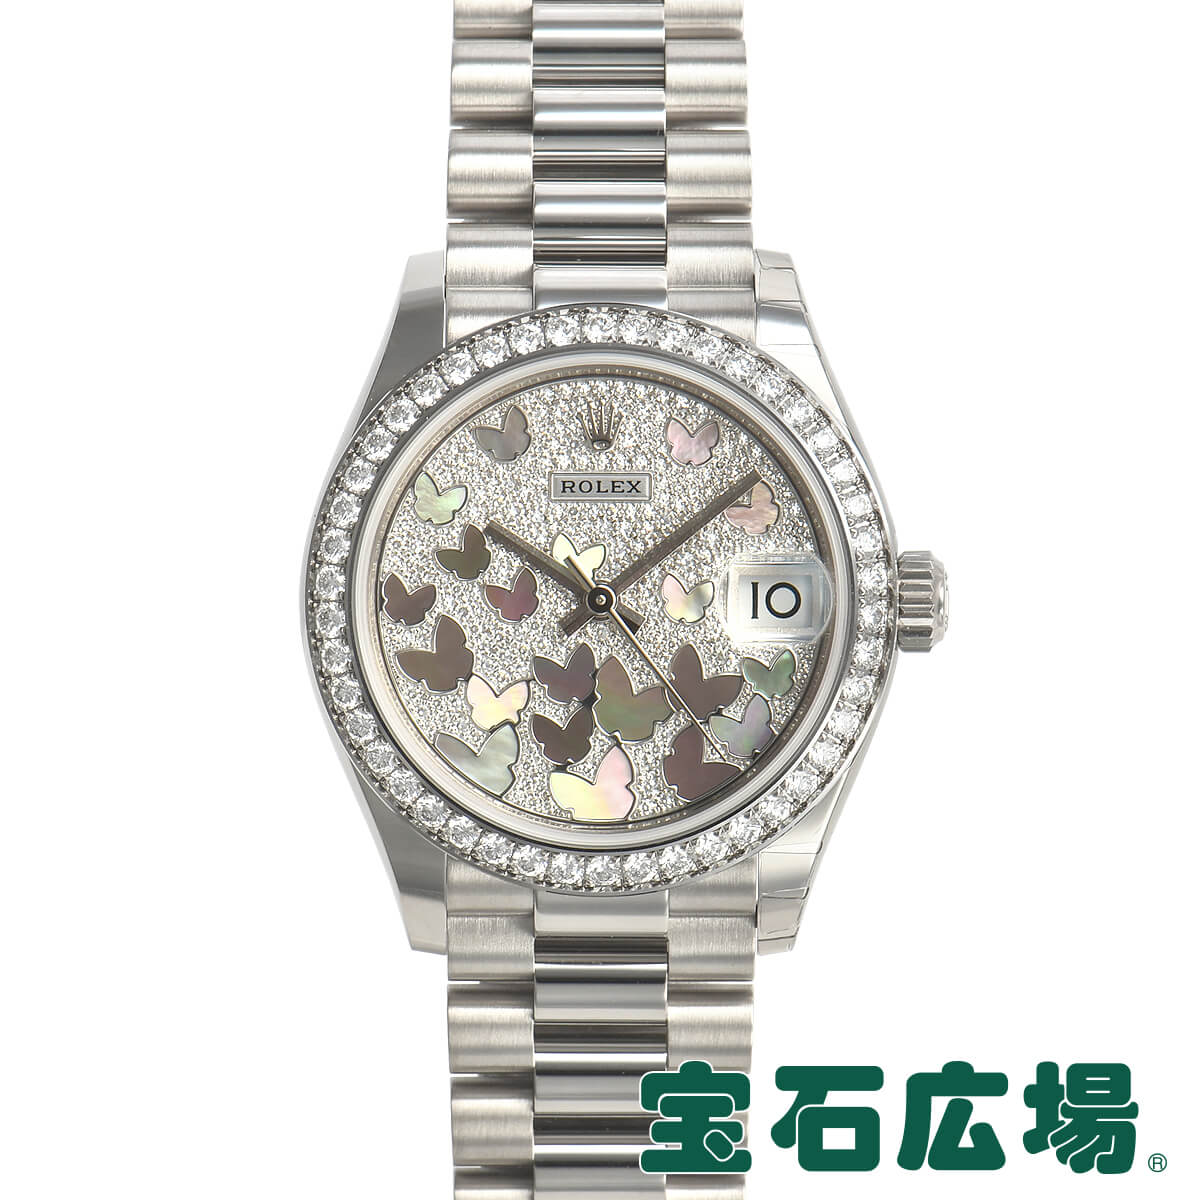 ロレックス ROLEX デイトジャスト31 278289RBR【新品】ユニセックス 腕時計 送料無料